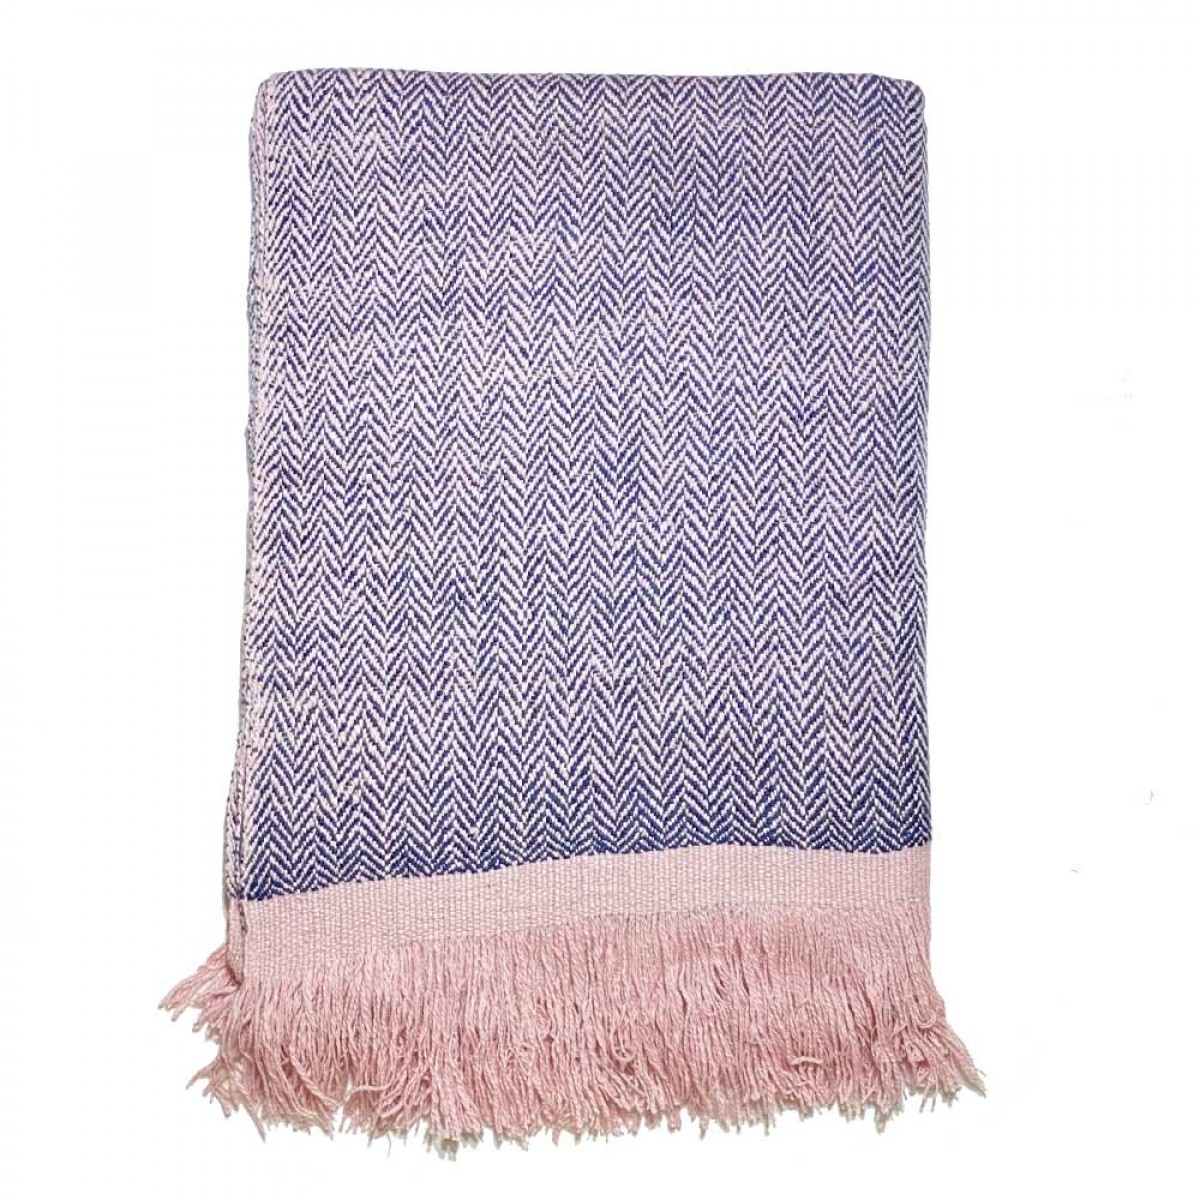 Blue & Pink Tassels Herringbone Cashmere Blanket (Made to Order)